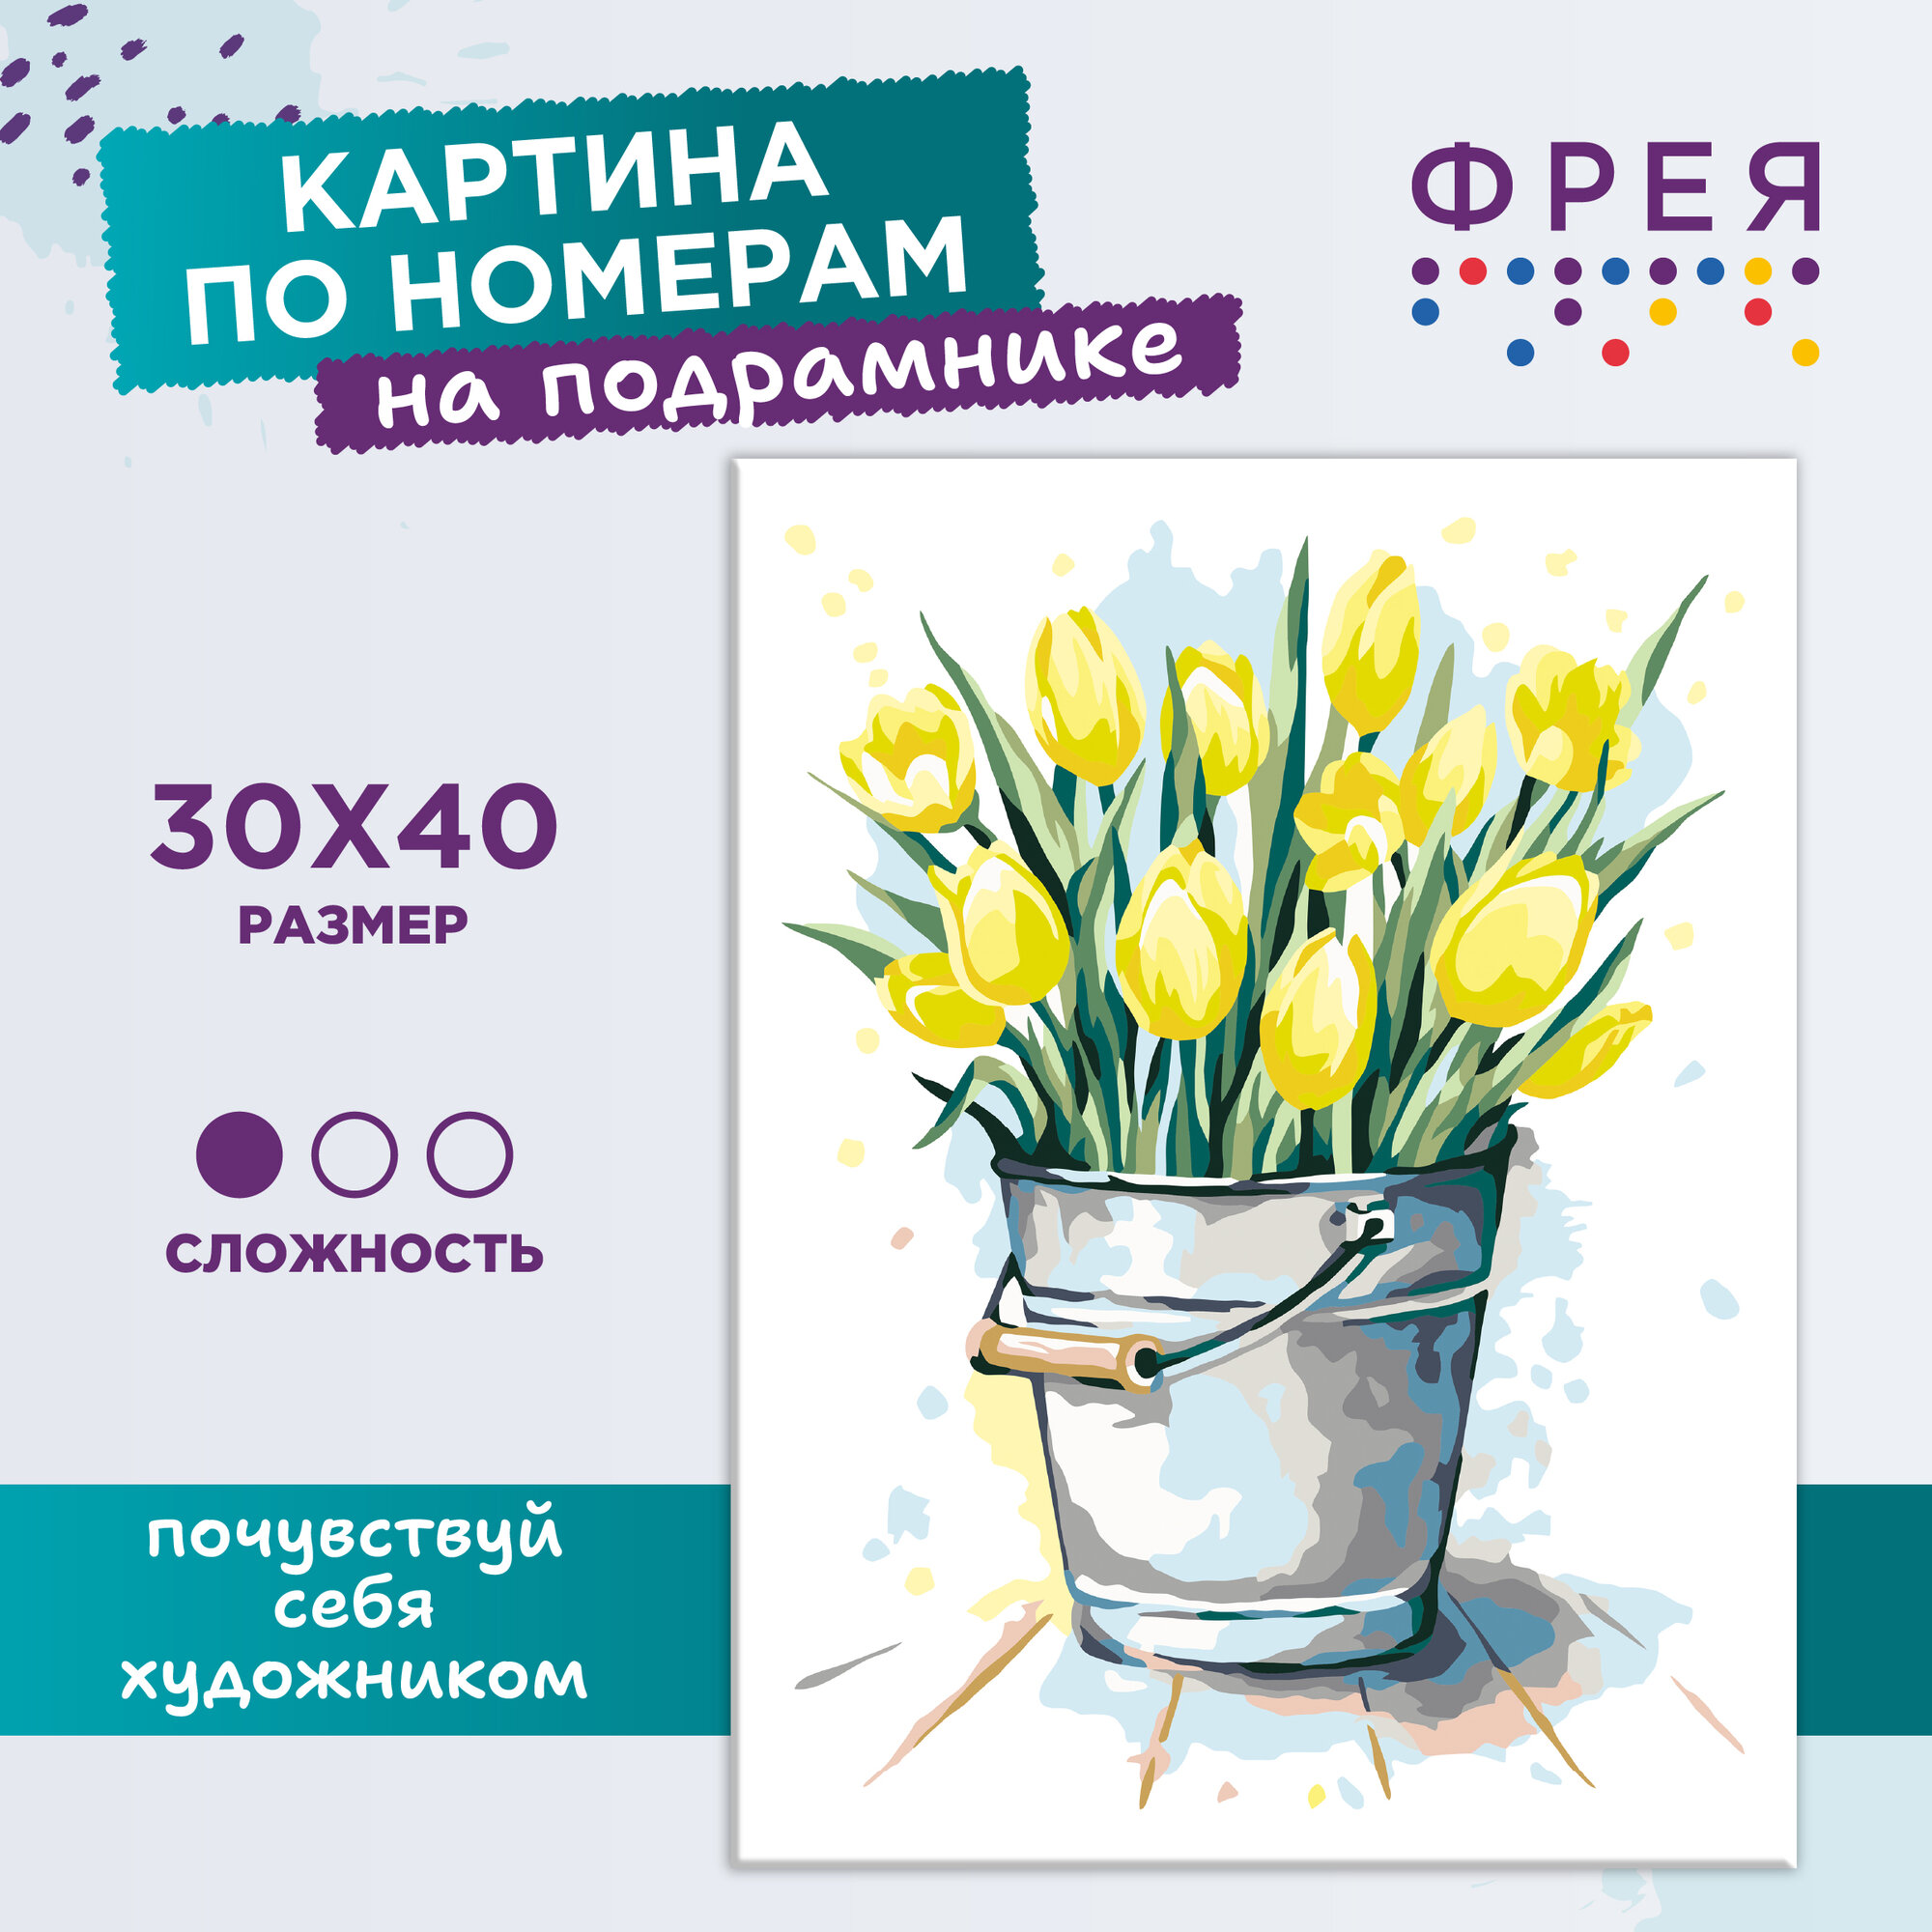 Картина по номерам с холстом на подрамнике "фрея" 40 х 30 см "Весенние тюльпаны" PNB/PM-052